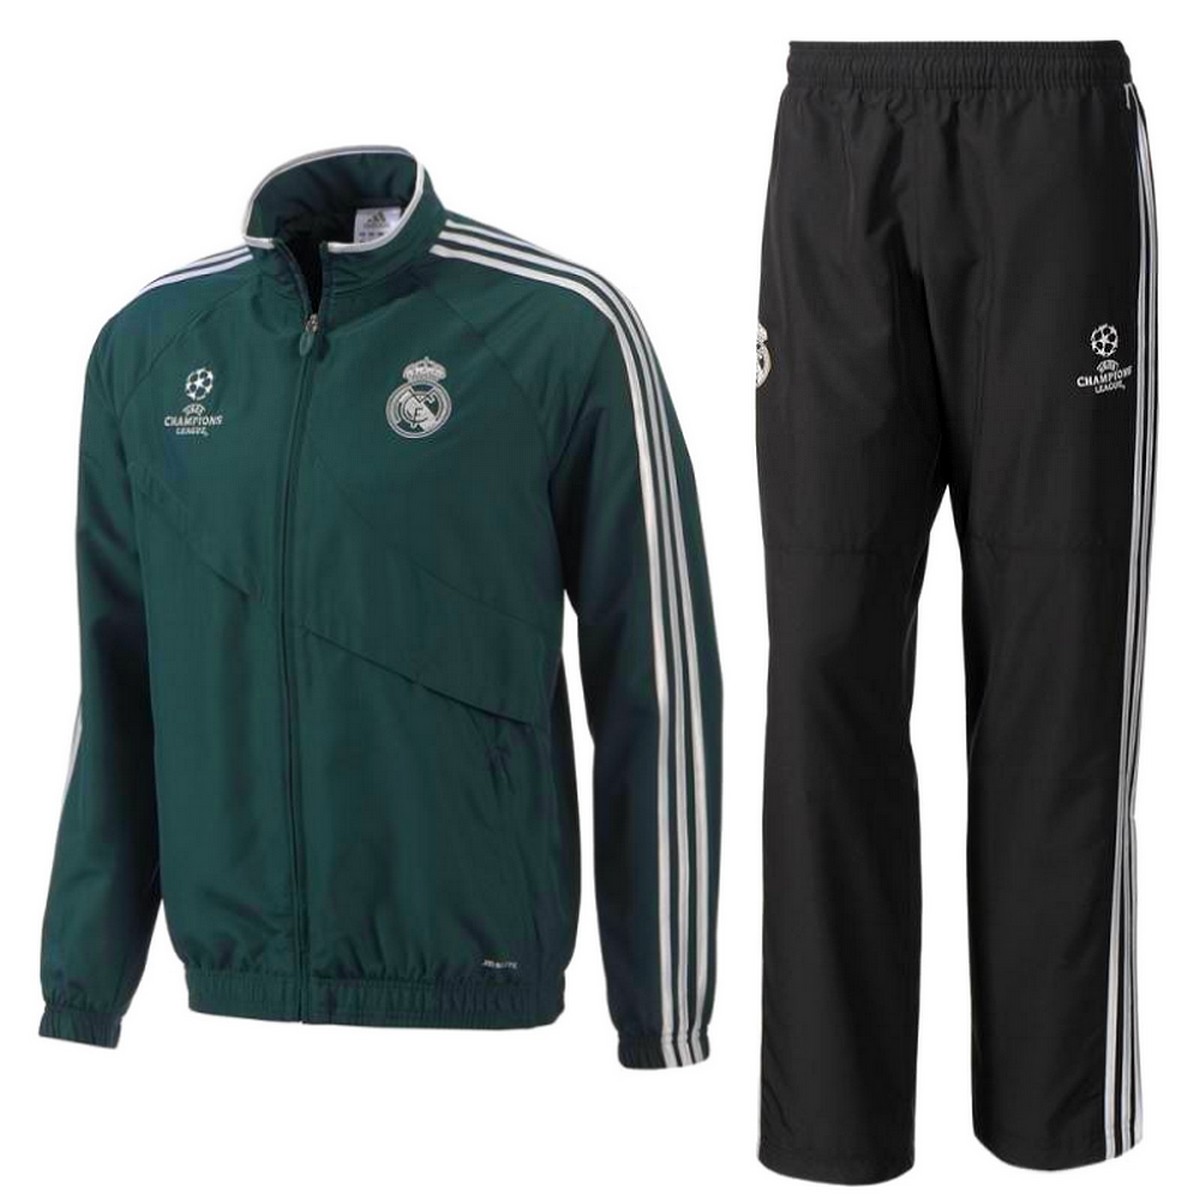 Chaqueta Real Madrid Adidas 2011-2012 M